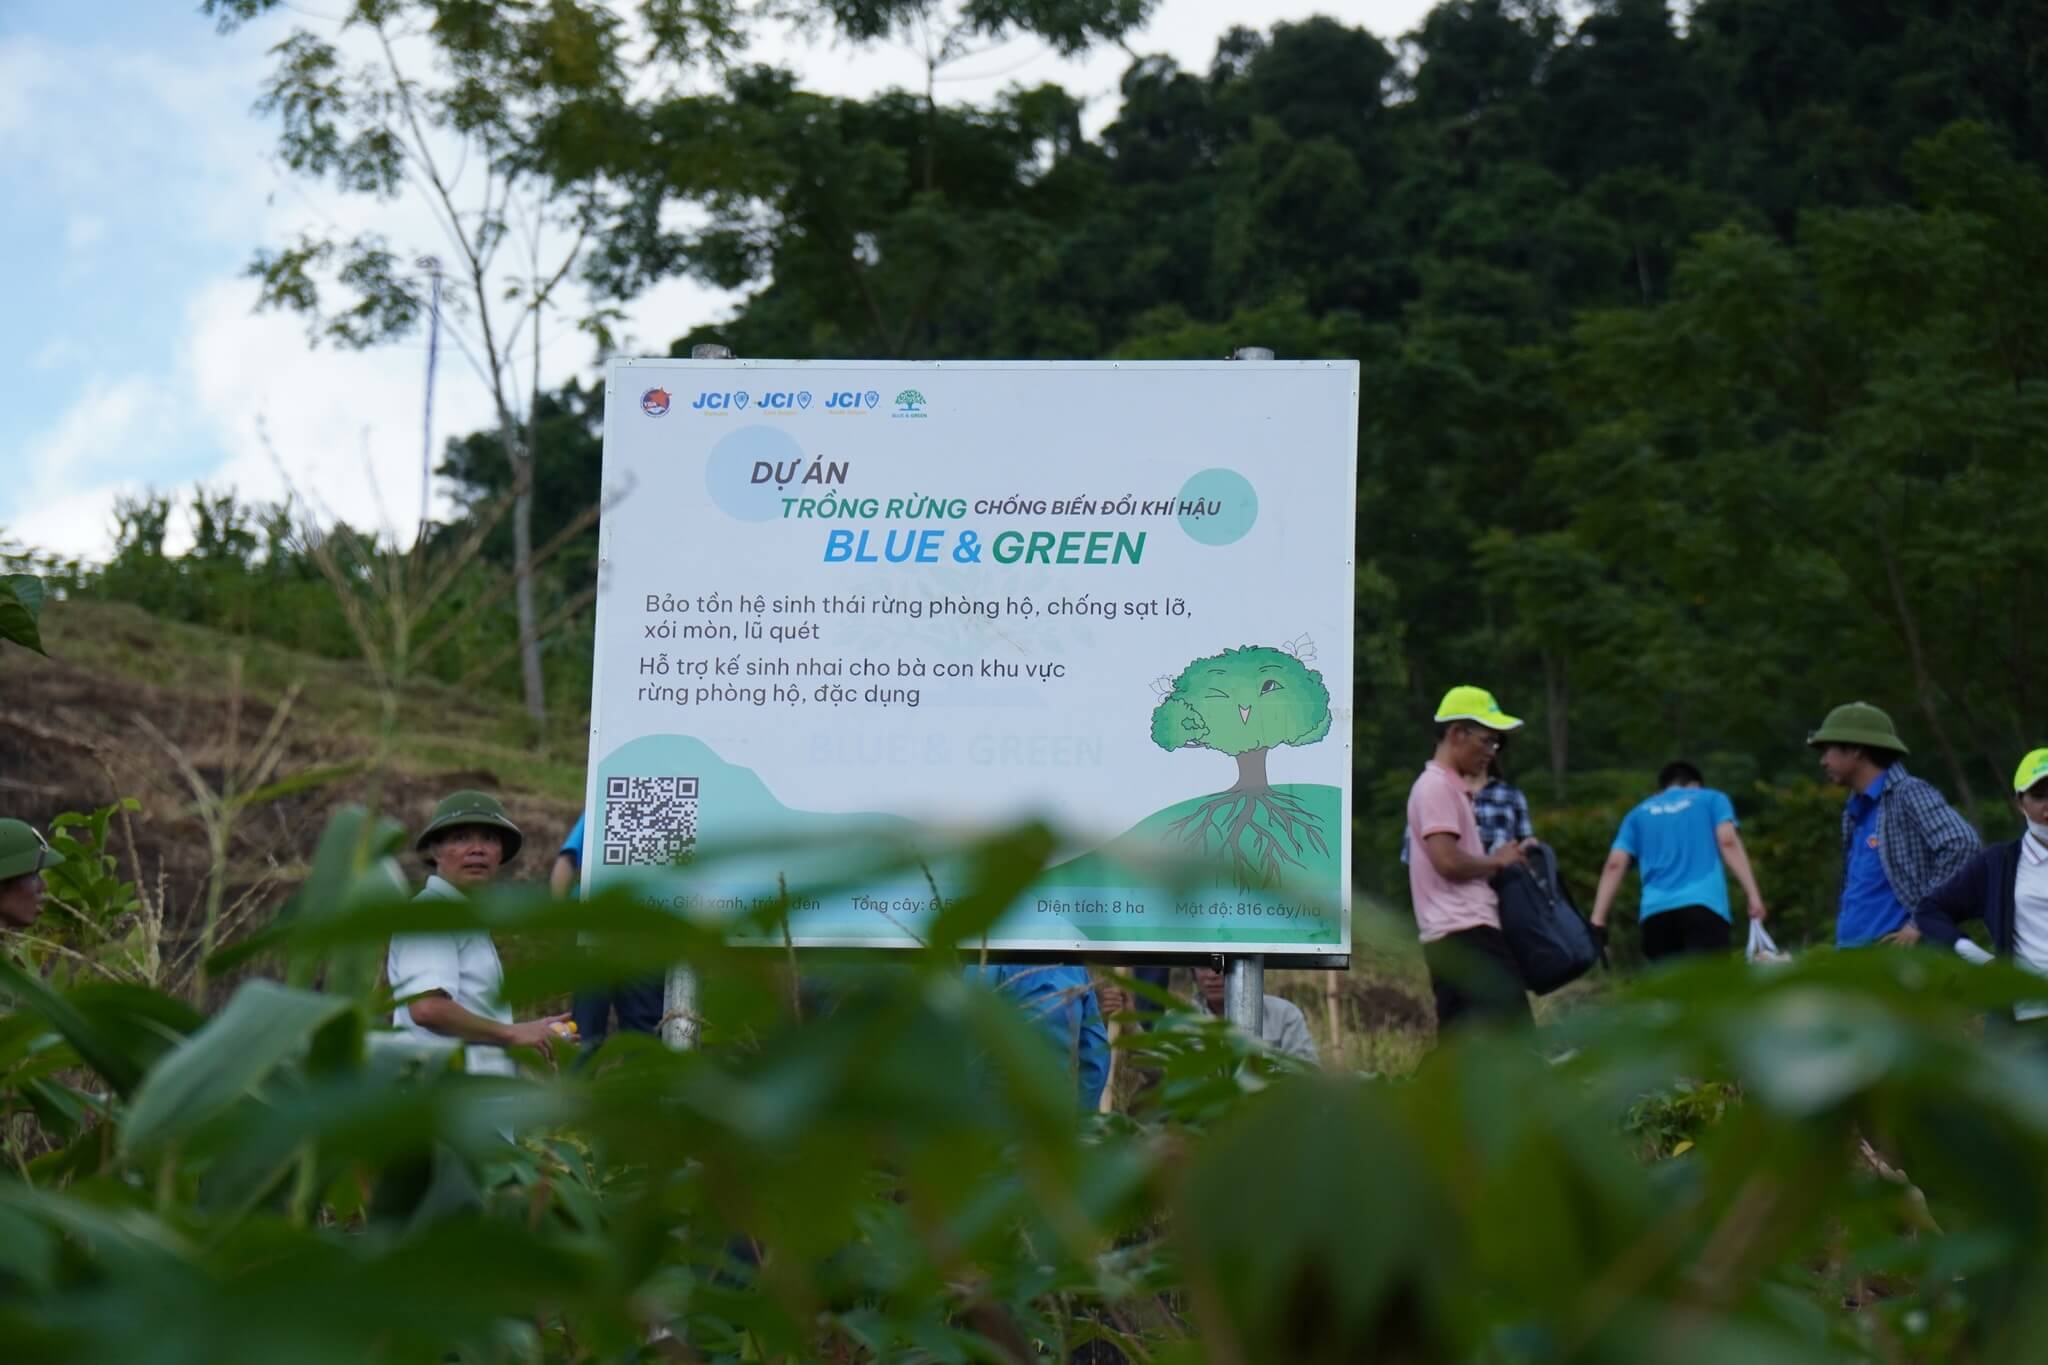 Thành viên tham dự hoạt động từ JCI Việt Nam tham gia dự án trồng rừng tại KBTTN Pù-Hu